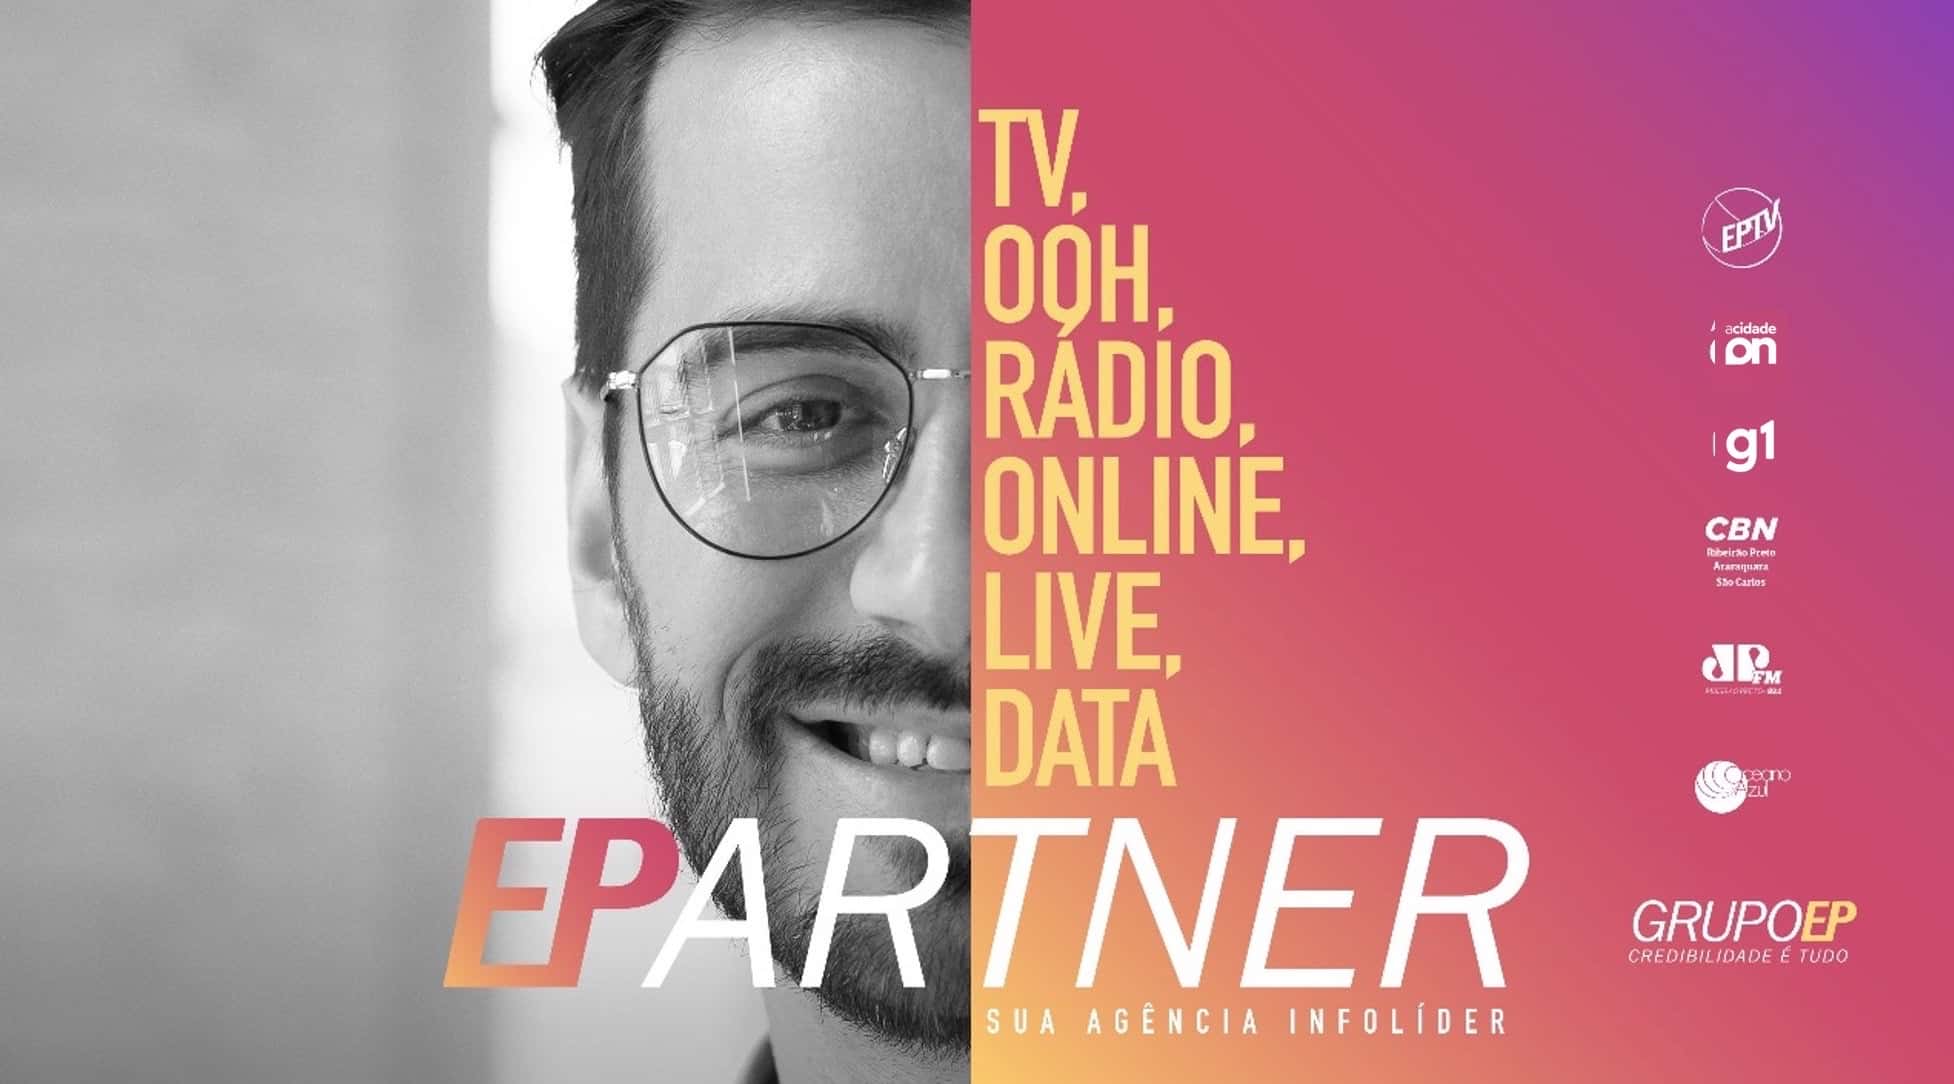 Grupo EP lança EPartner, programa de parceria com agências publicitárias